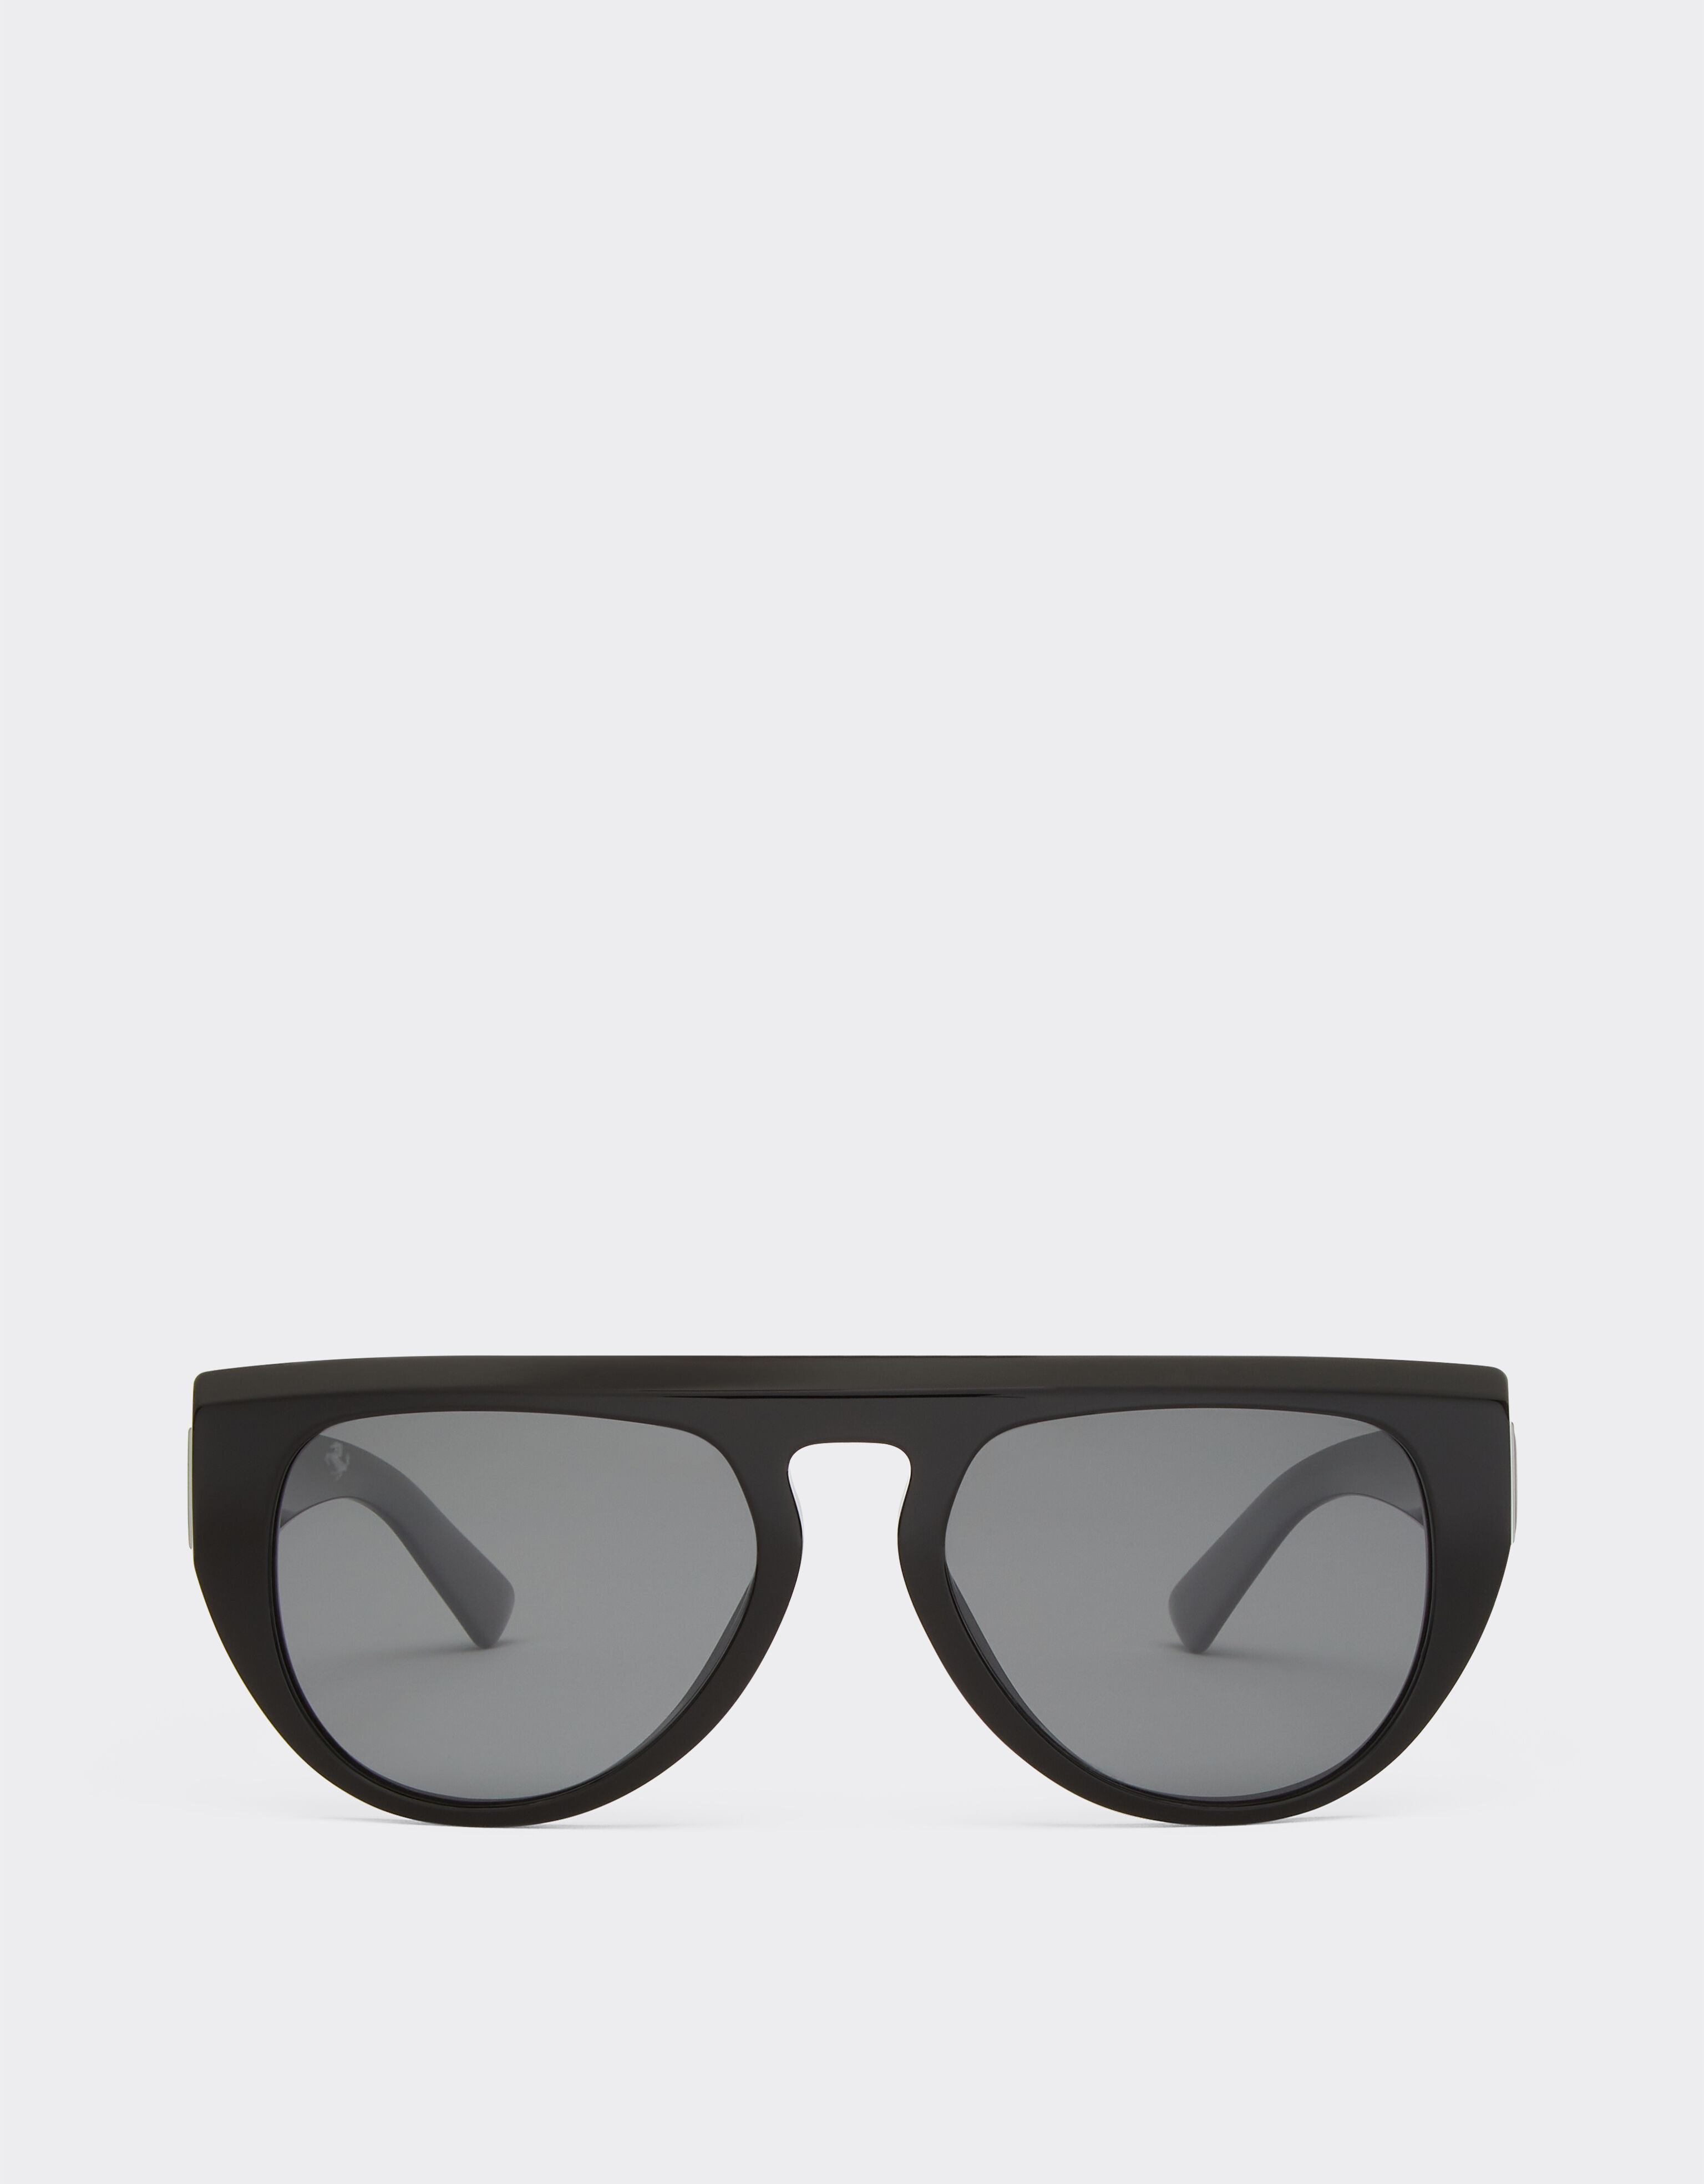 ${brand} Occhiale da sole Ferrari in acetato nero con lenti specchiate polarizzate ${colorDescription} ${masterID}